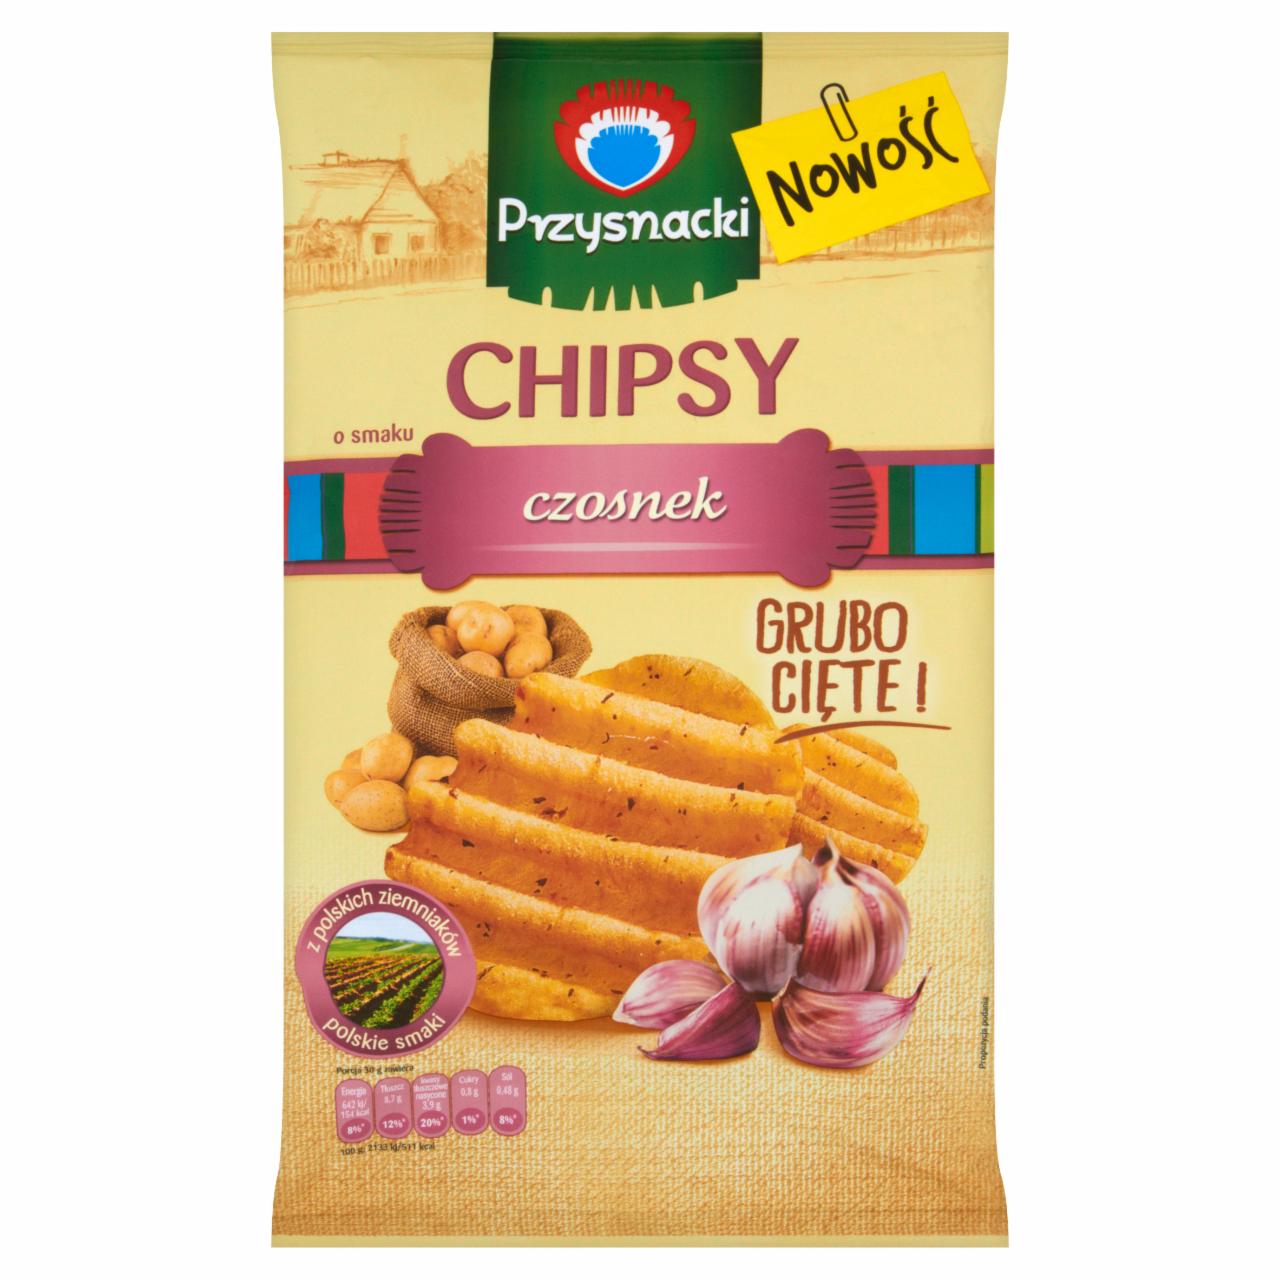 Zdjęcia - Przysnacki Chipsy o smaku czosnek 135 g